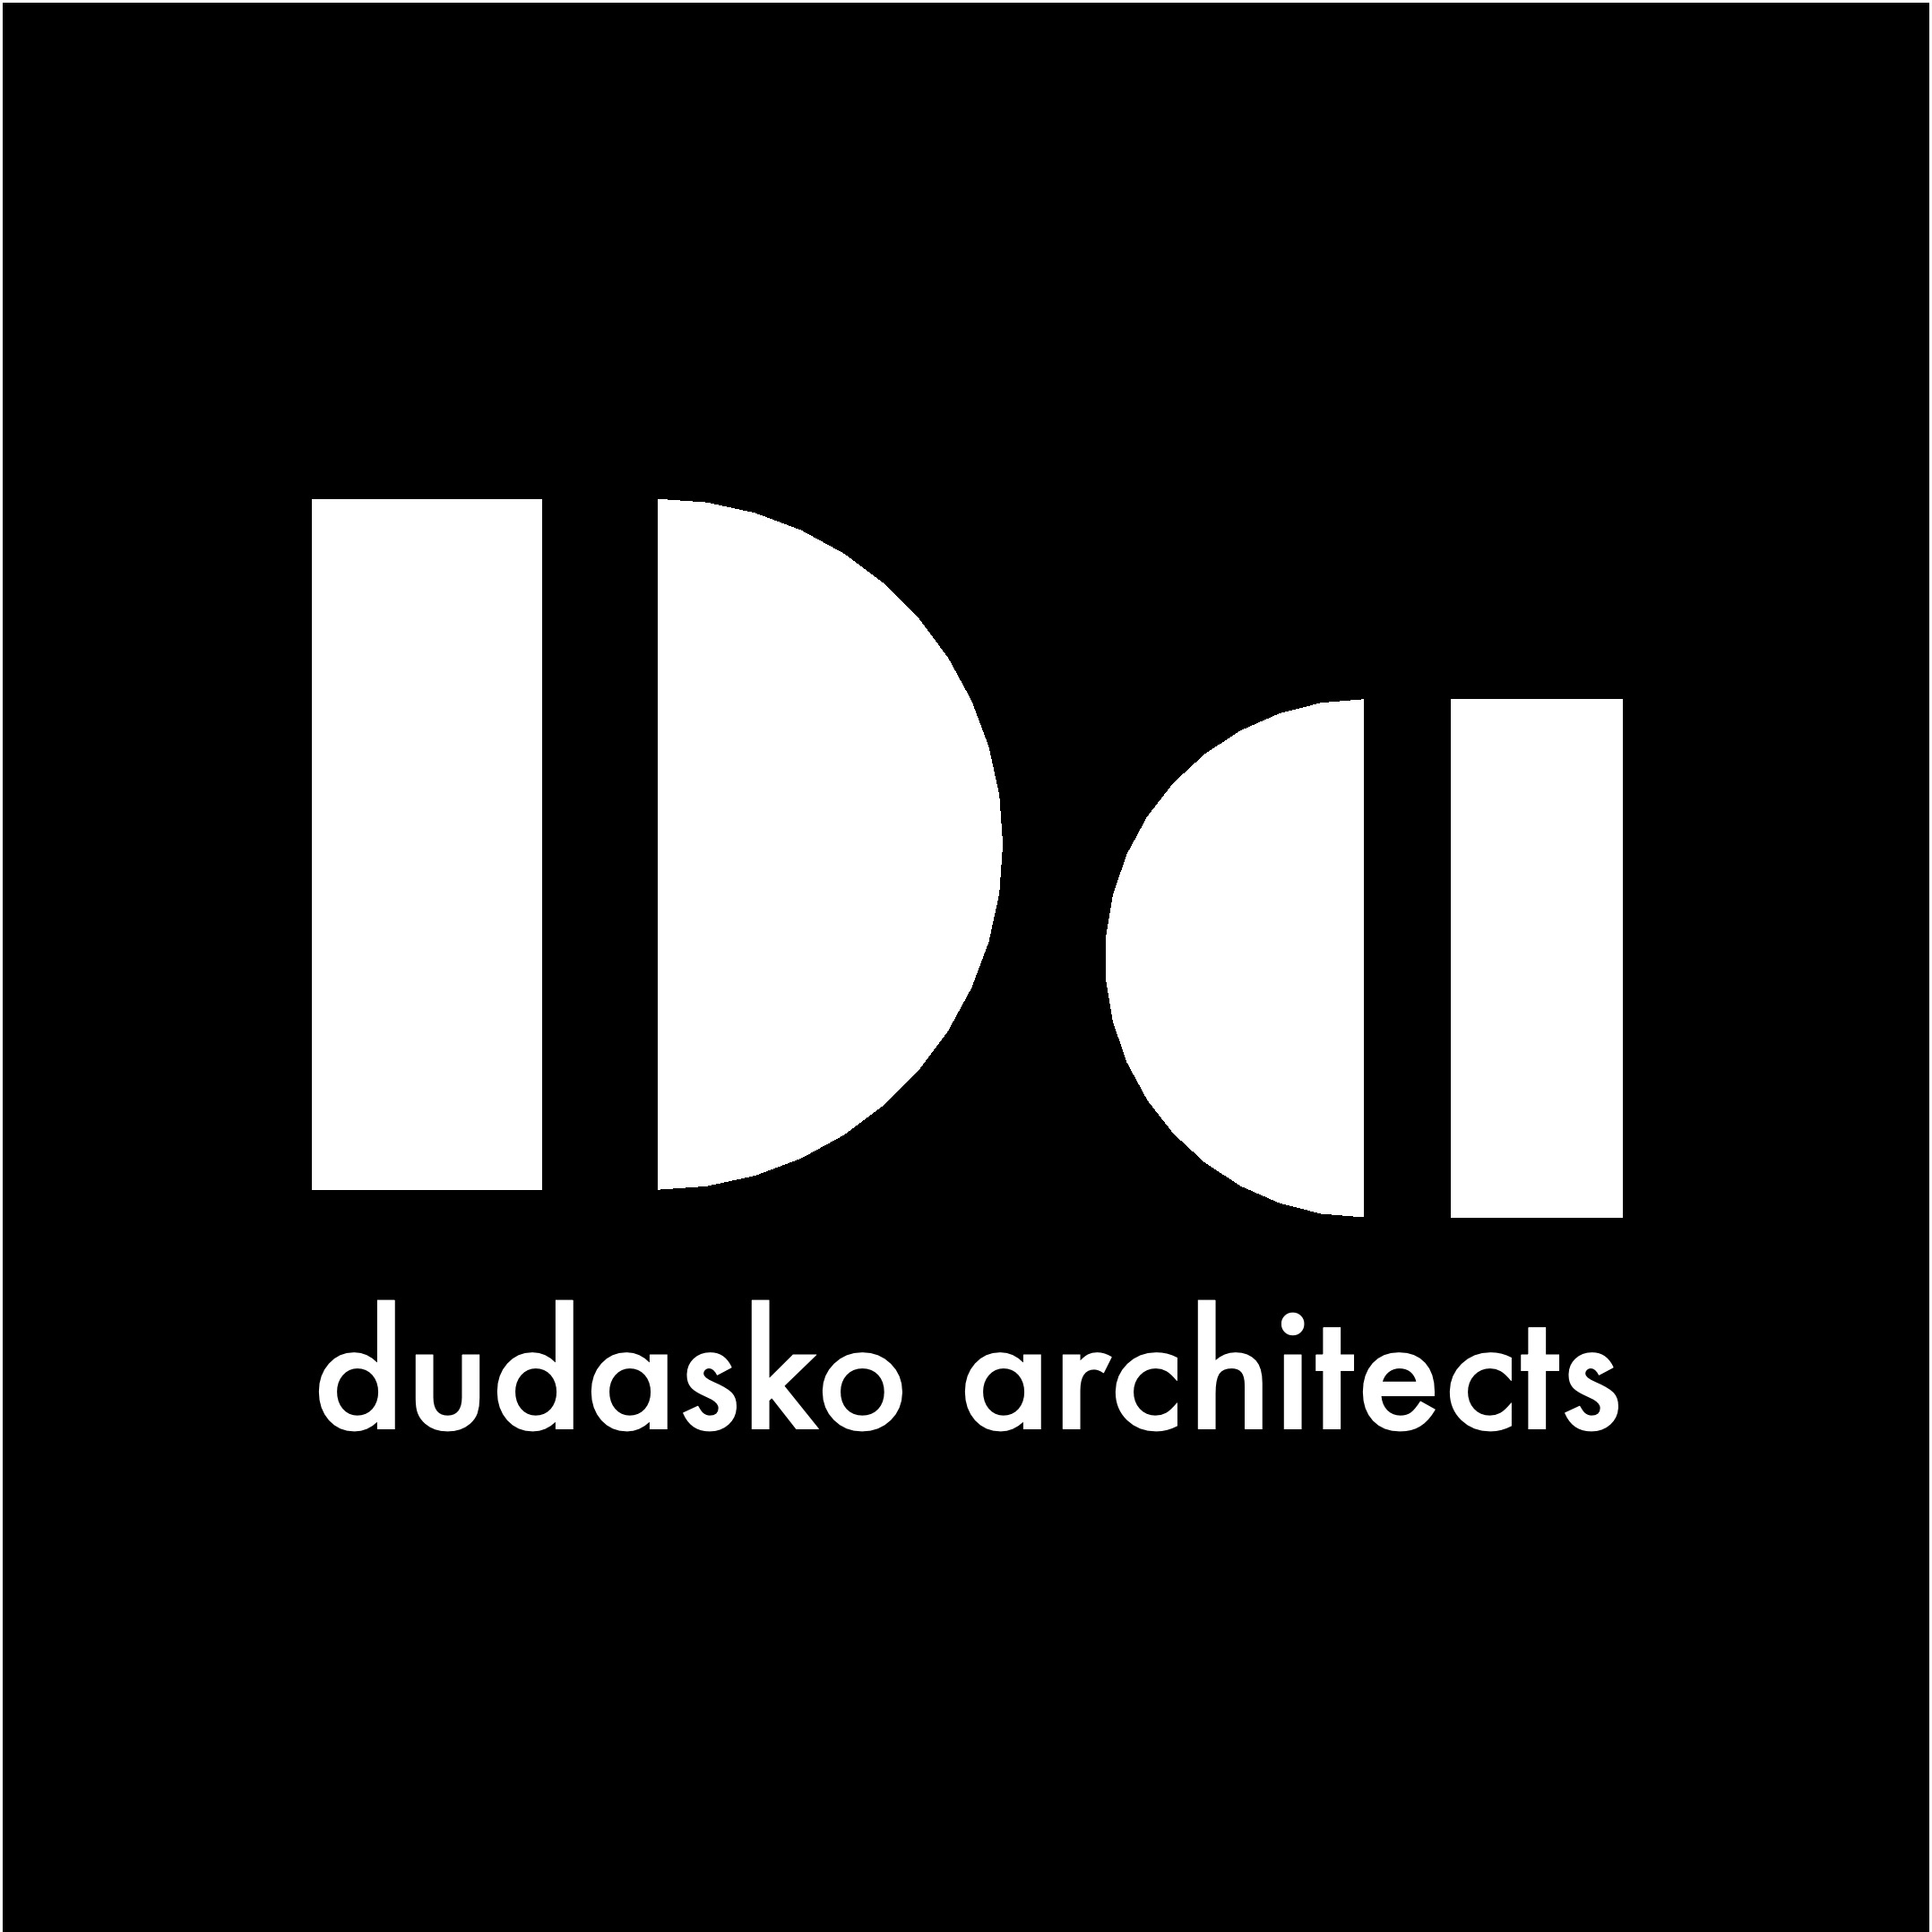 DUDASKO ARCHITECTS